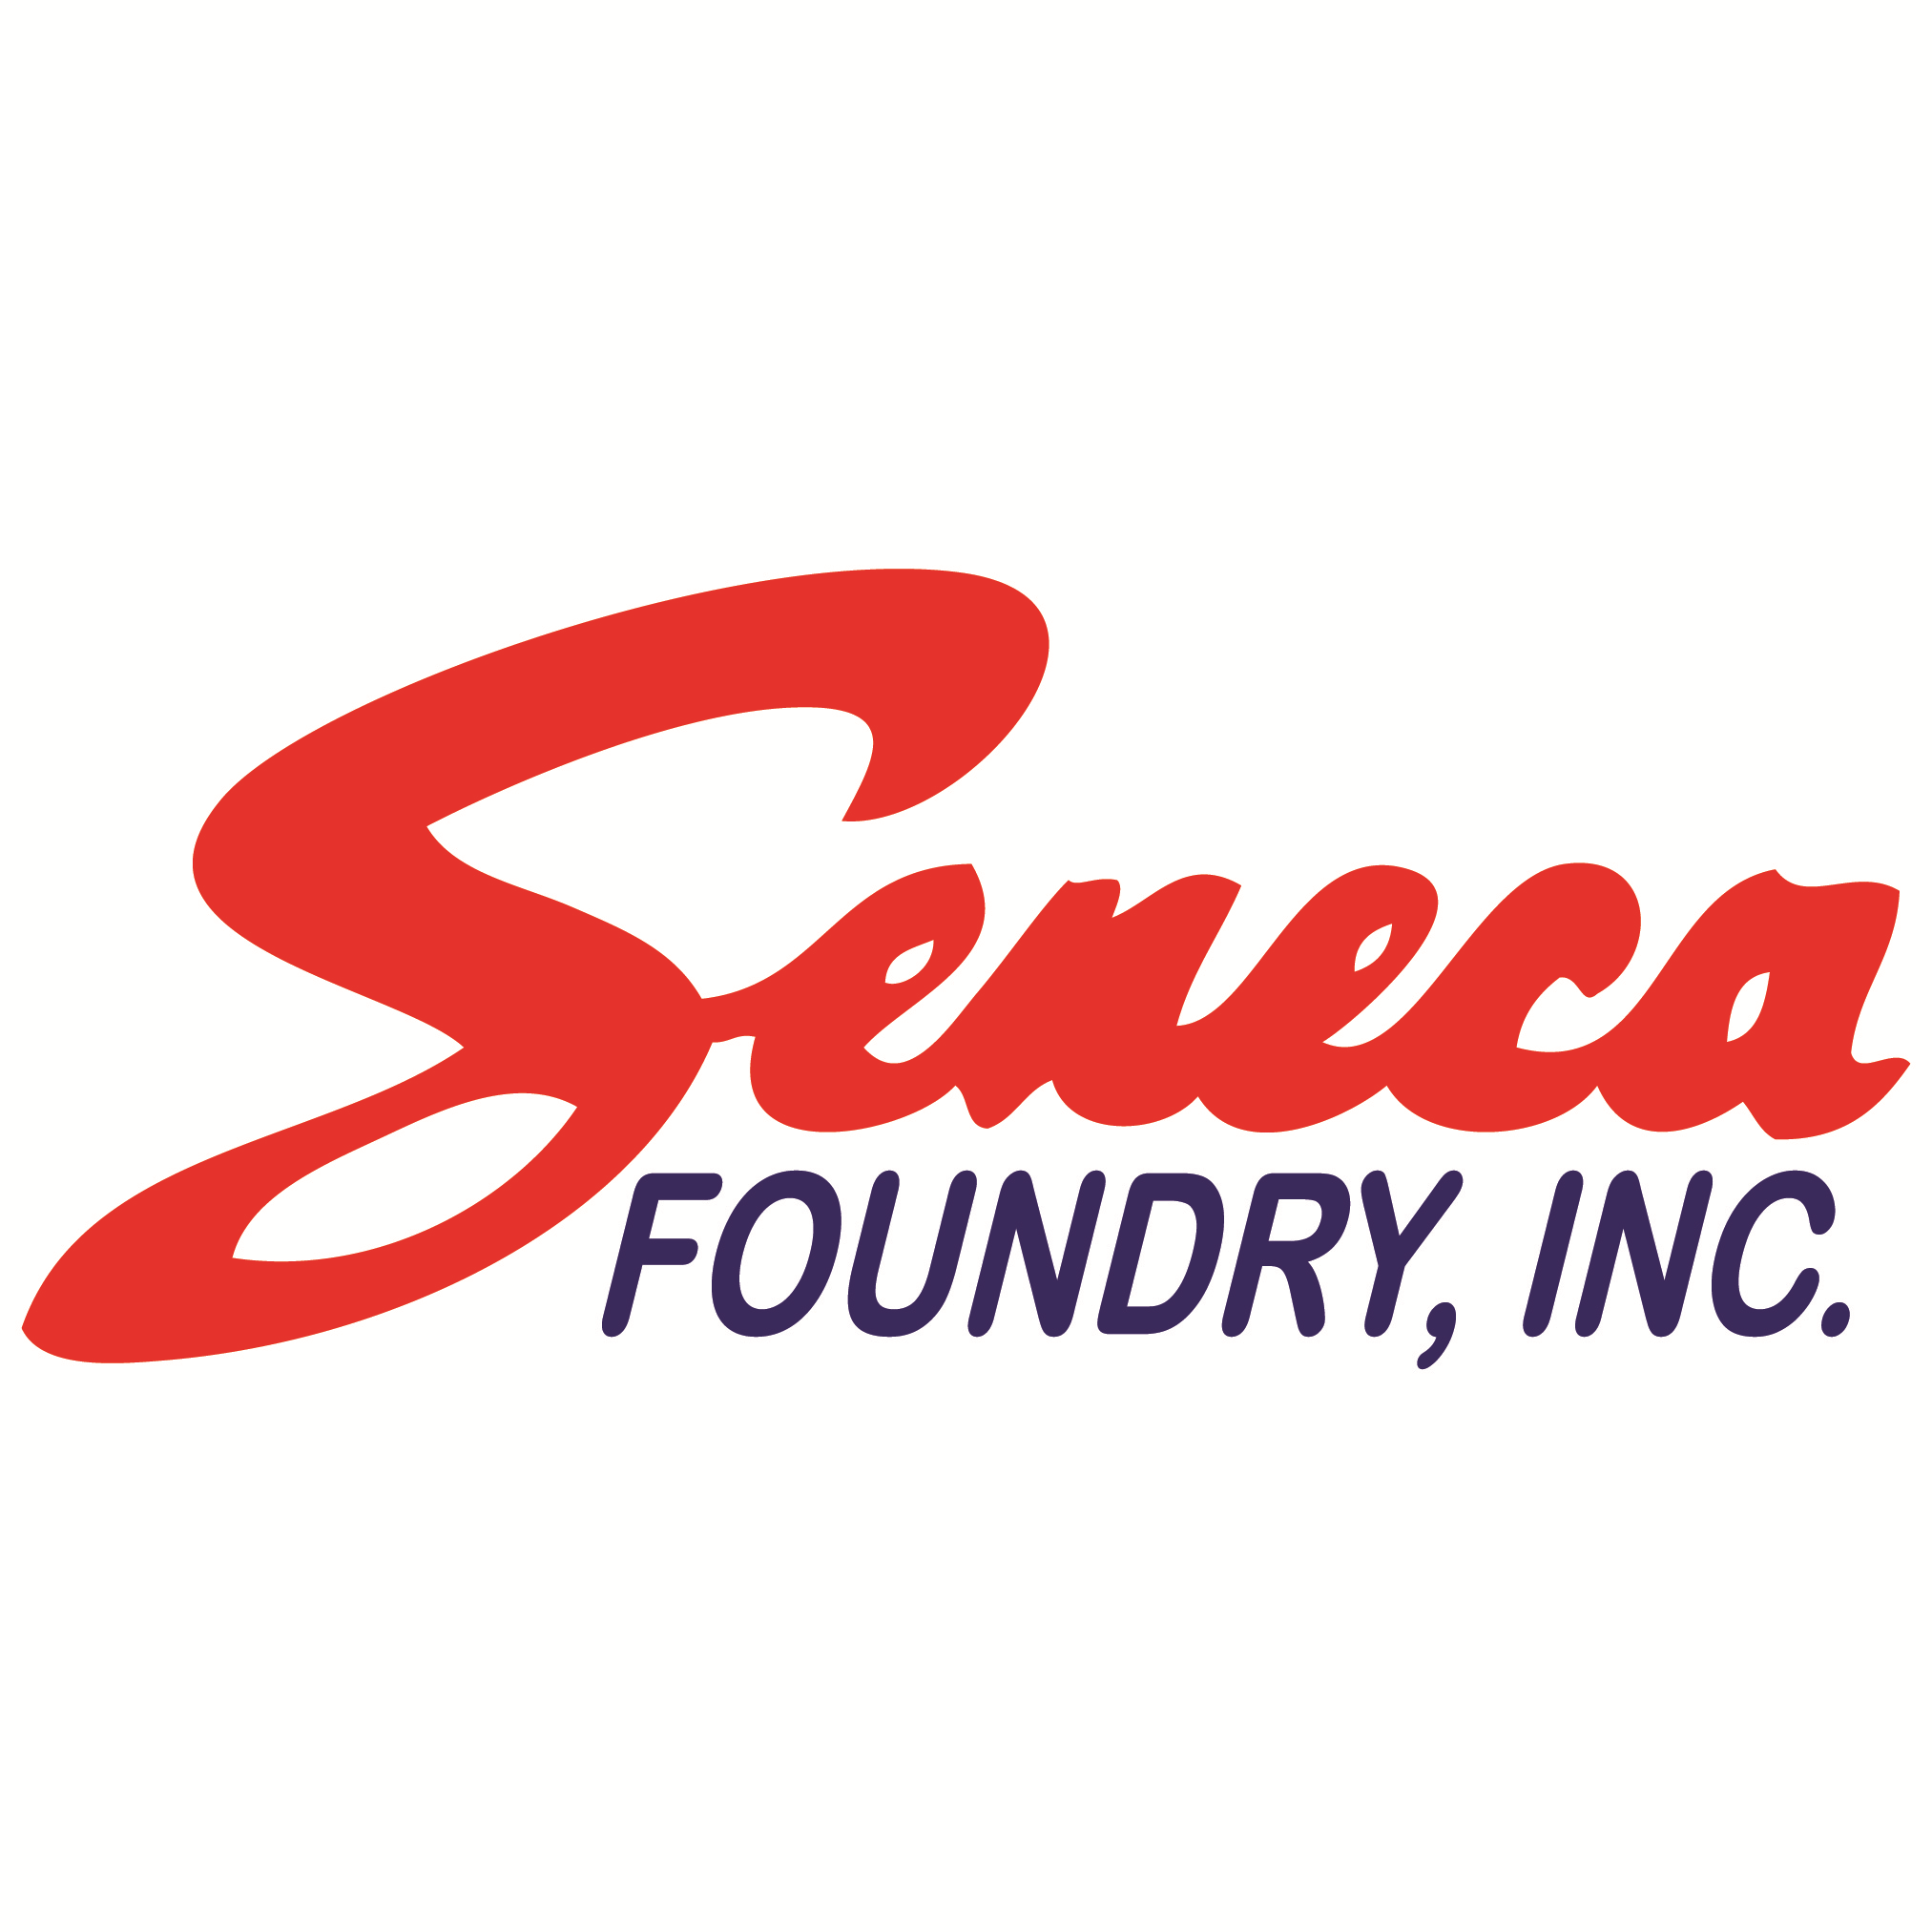 Seneca Foundry, Inc. logo